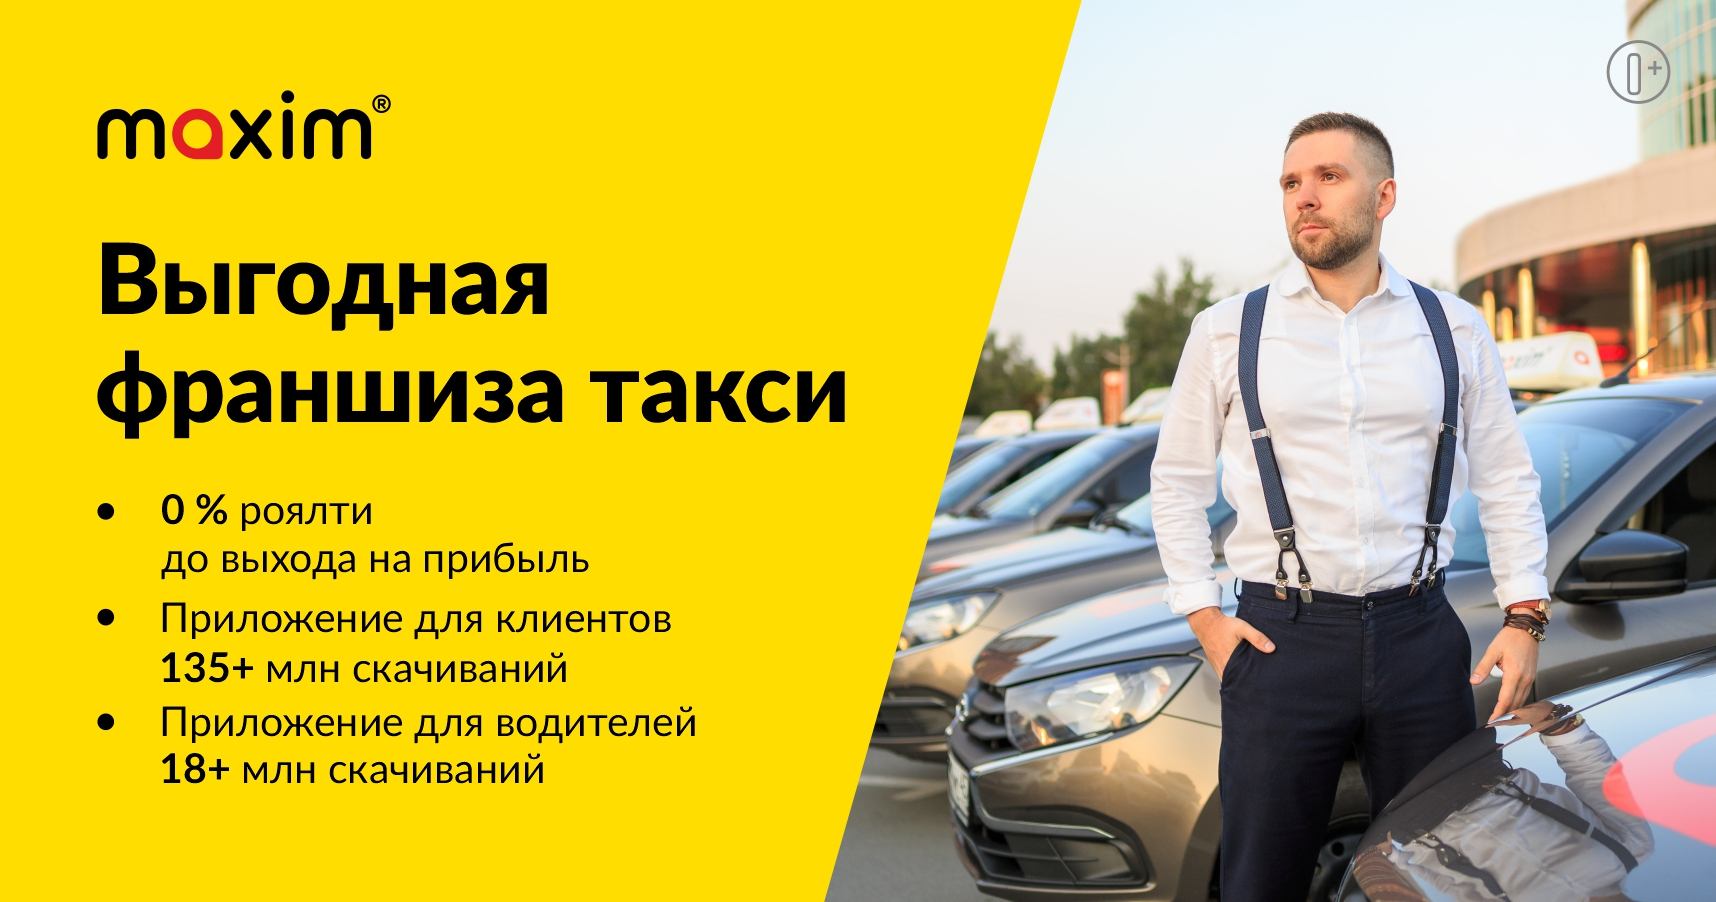 Франшиза сервиса заказа такси «Максим»